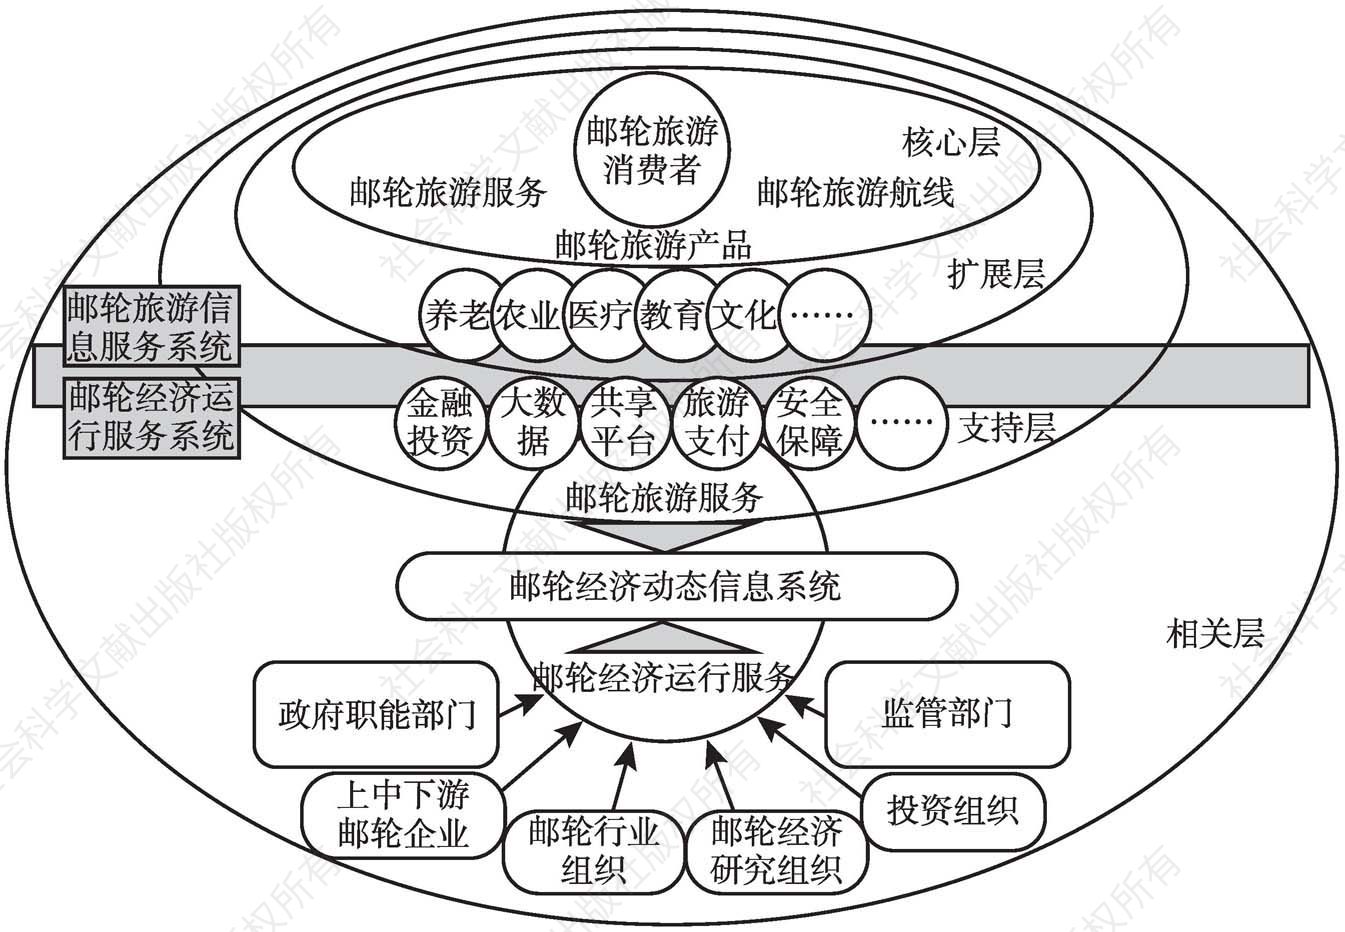 图2 邮轮经济信息系统概念模型